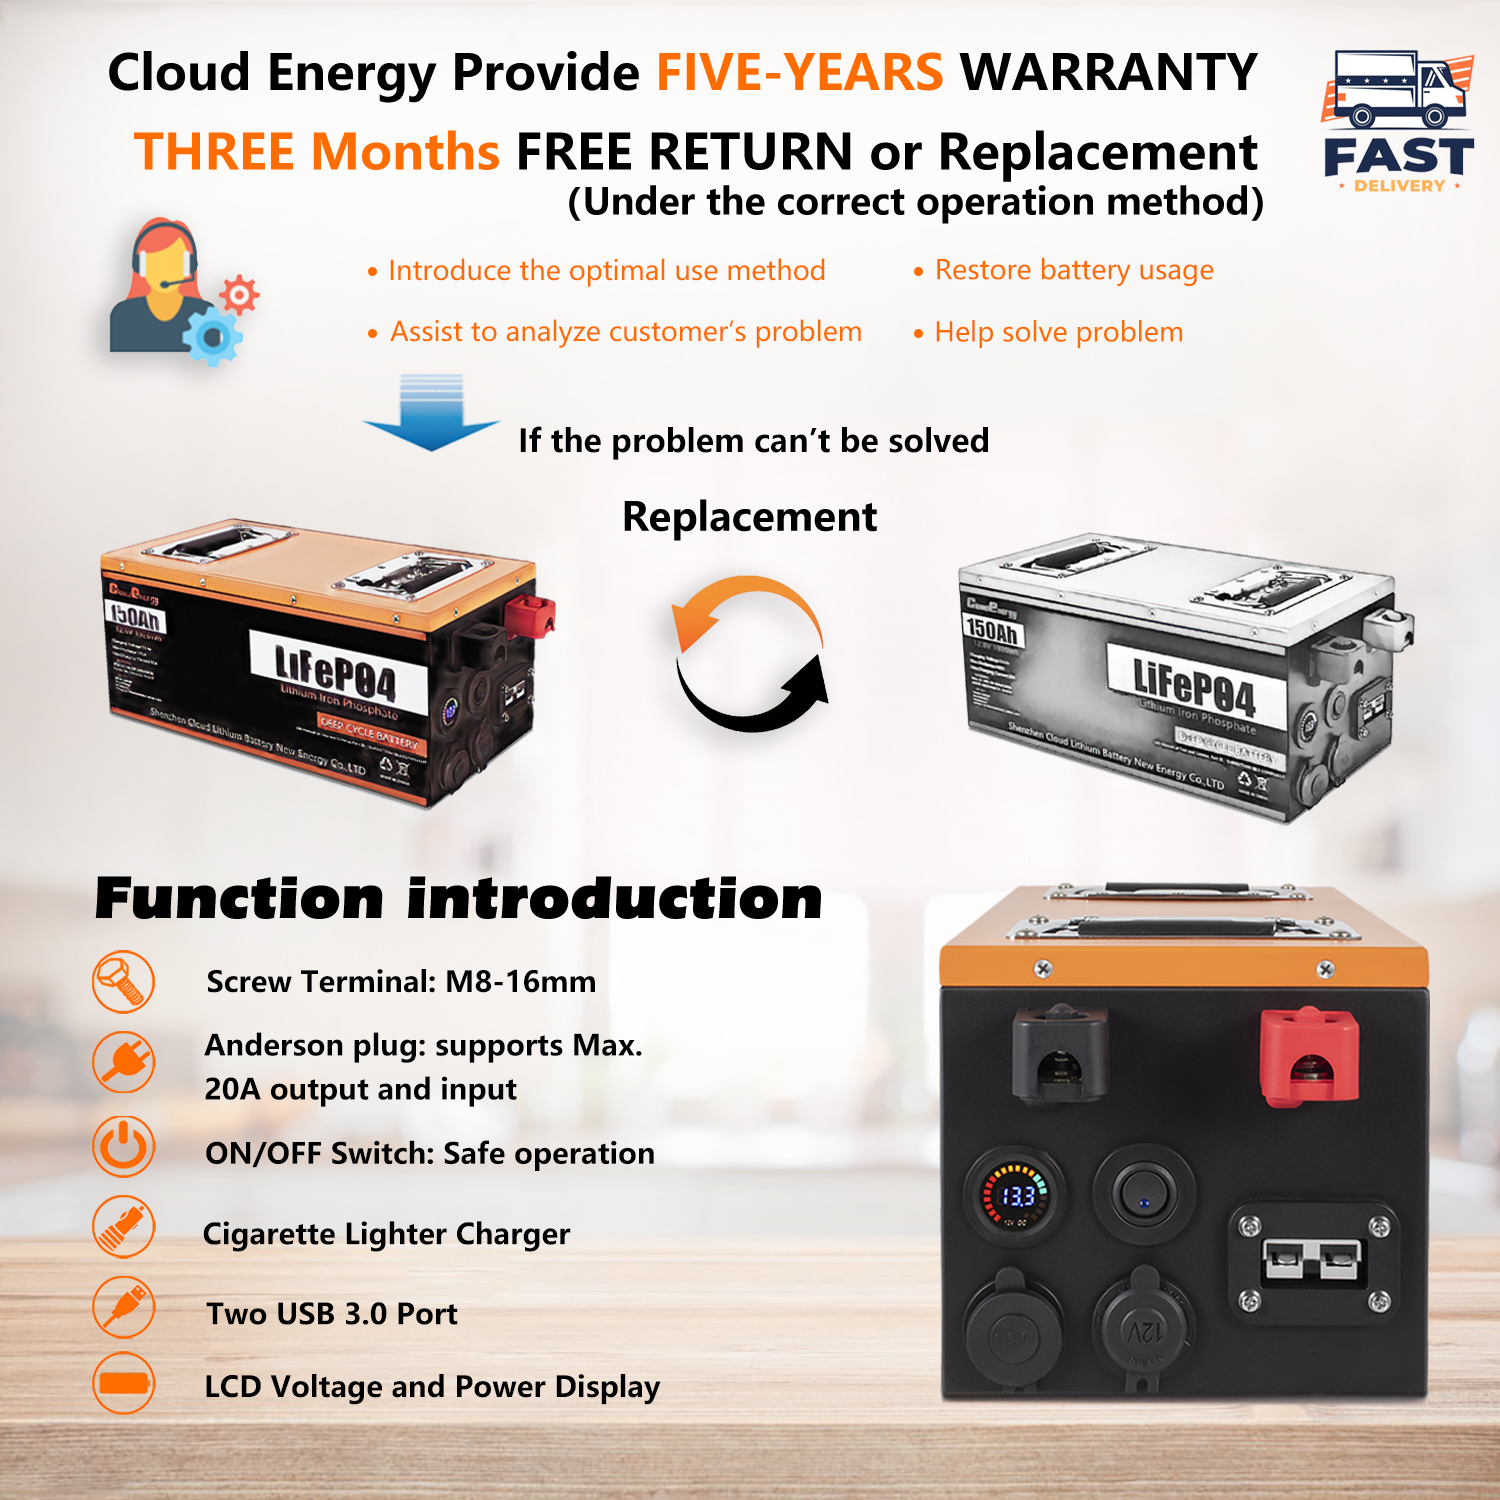 cloud energy 24v 150ah lifepo4 battery